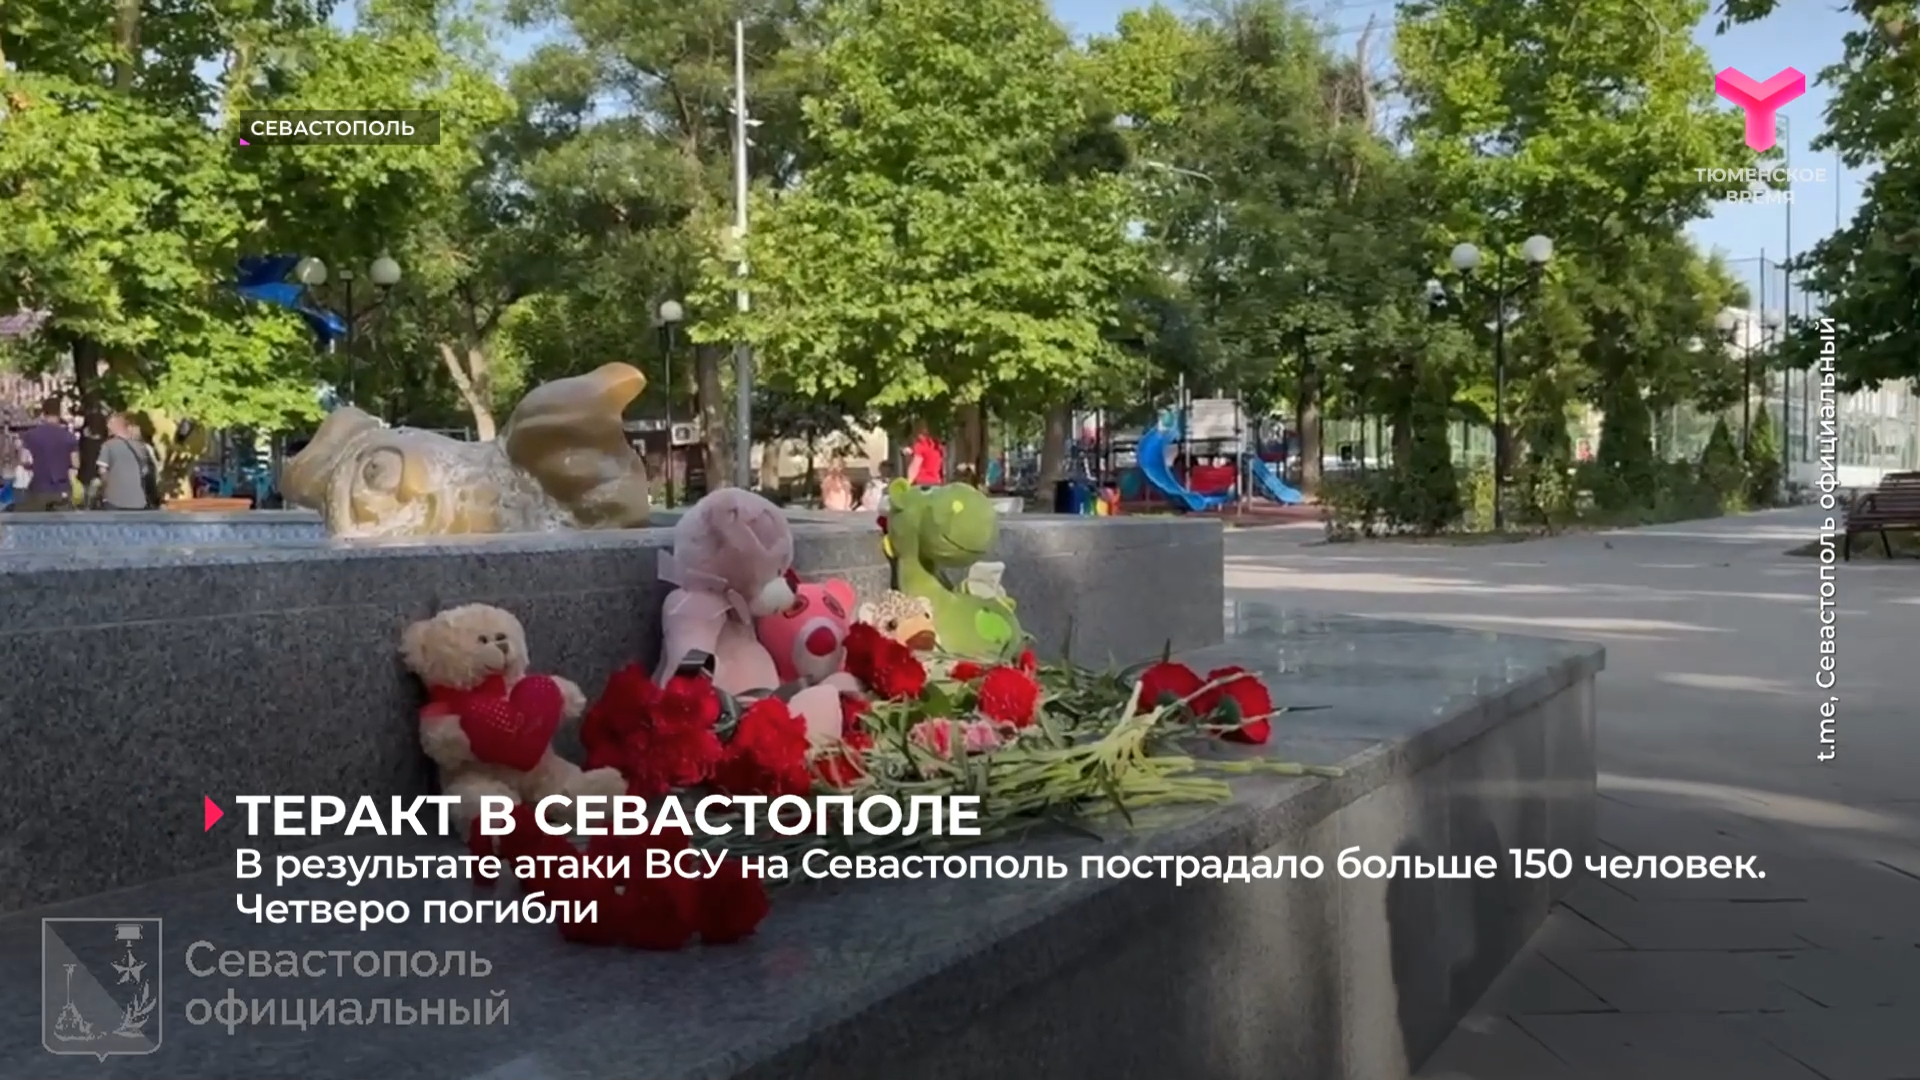 В результате атаки ВСУ на Севастополь пострадало больше 150 человек. Четверо погибли